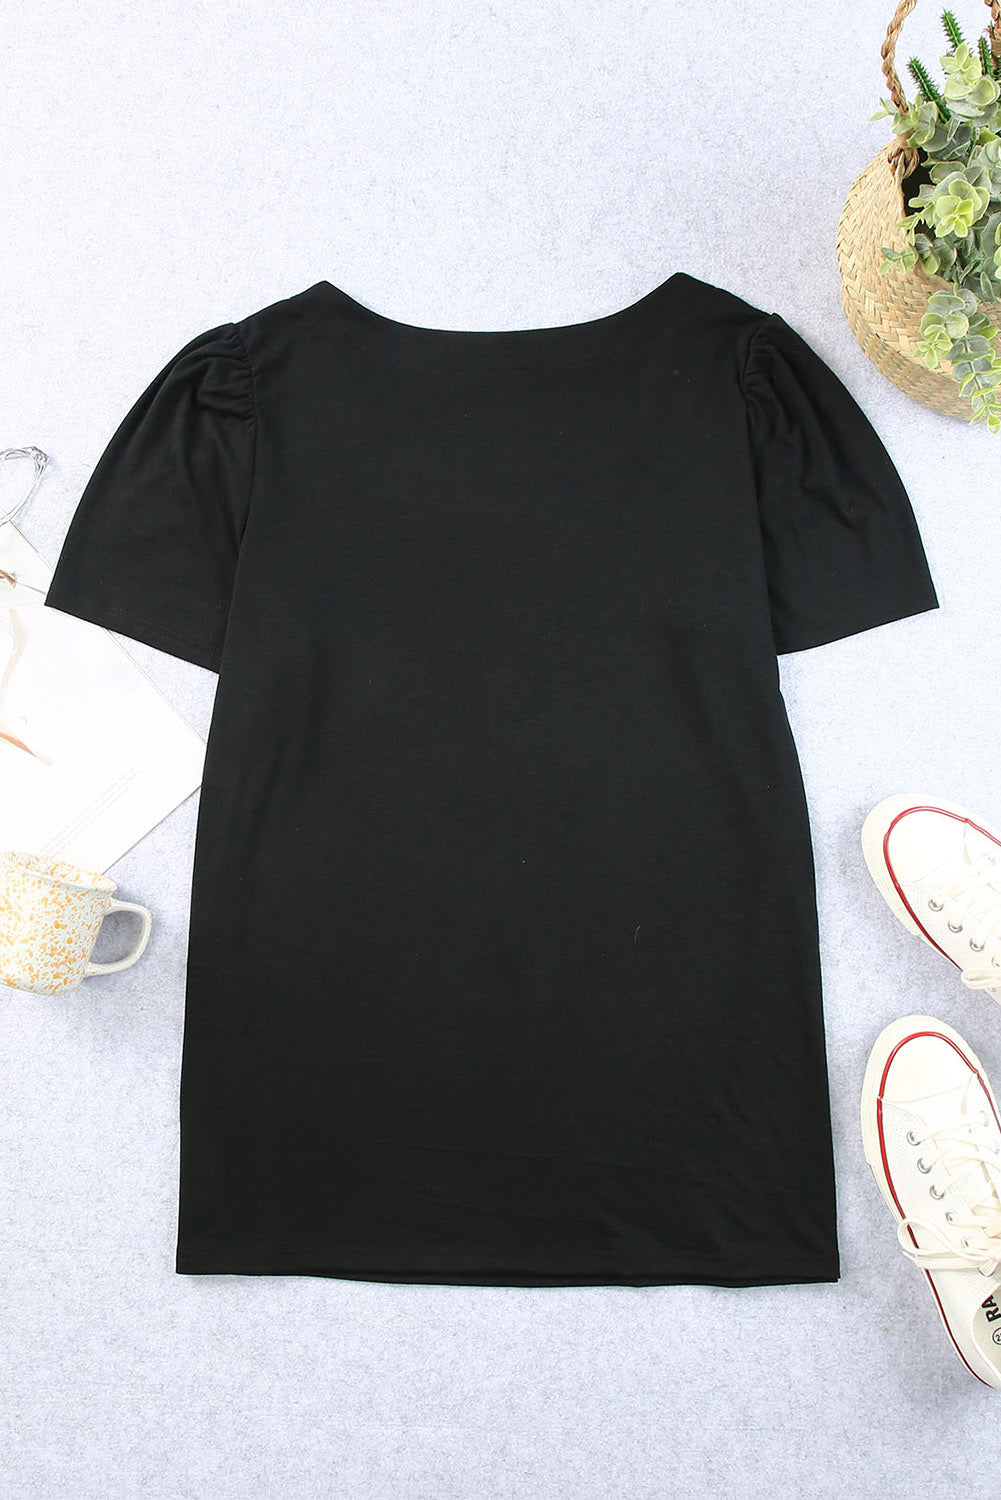 Crna majica s kratkim rukavima s četvrtastim ovratnikom i naborima na ramenima veće veličine